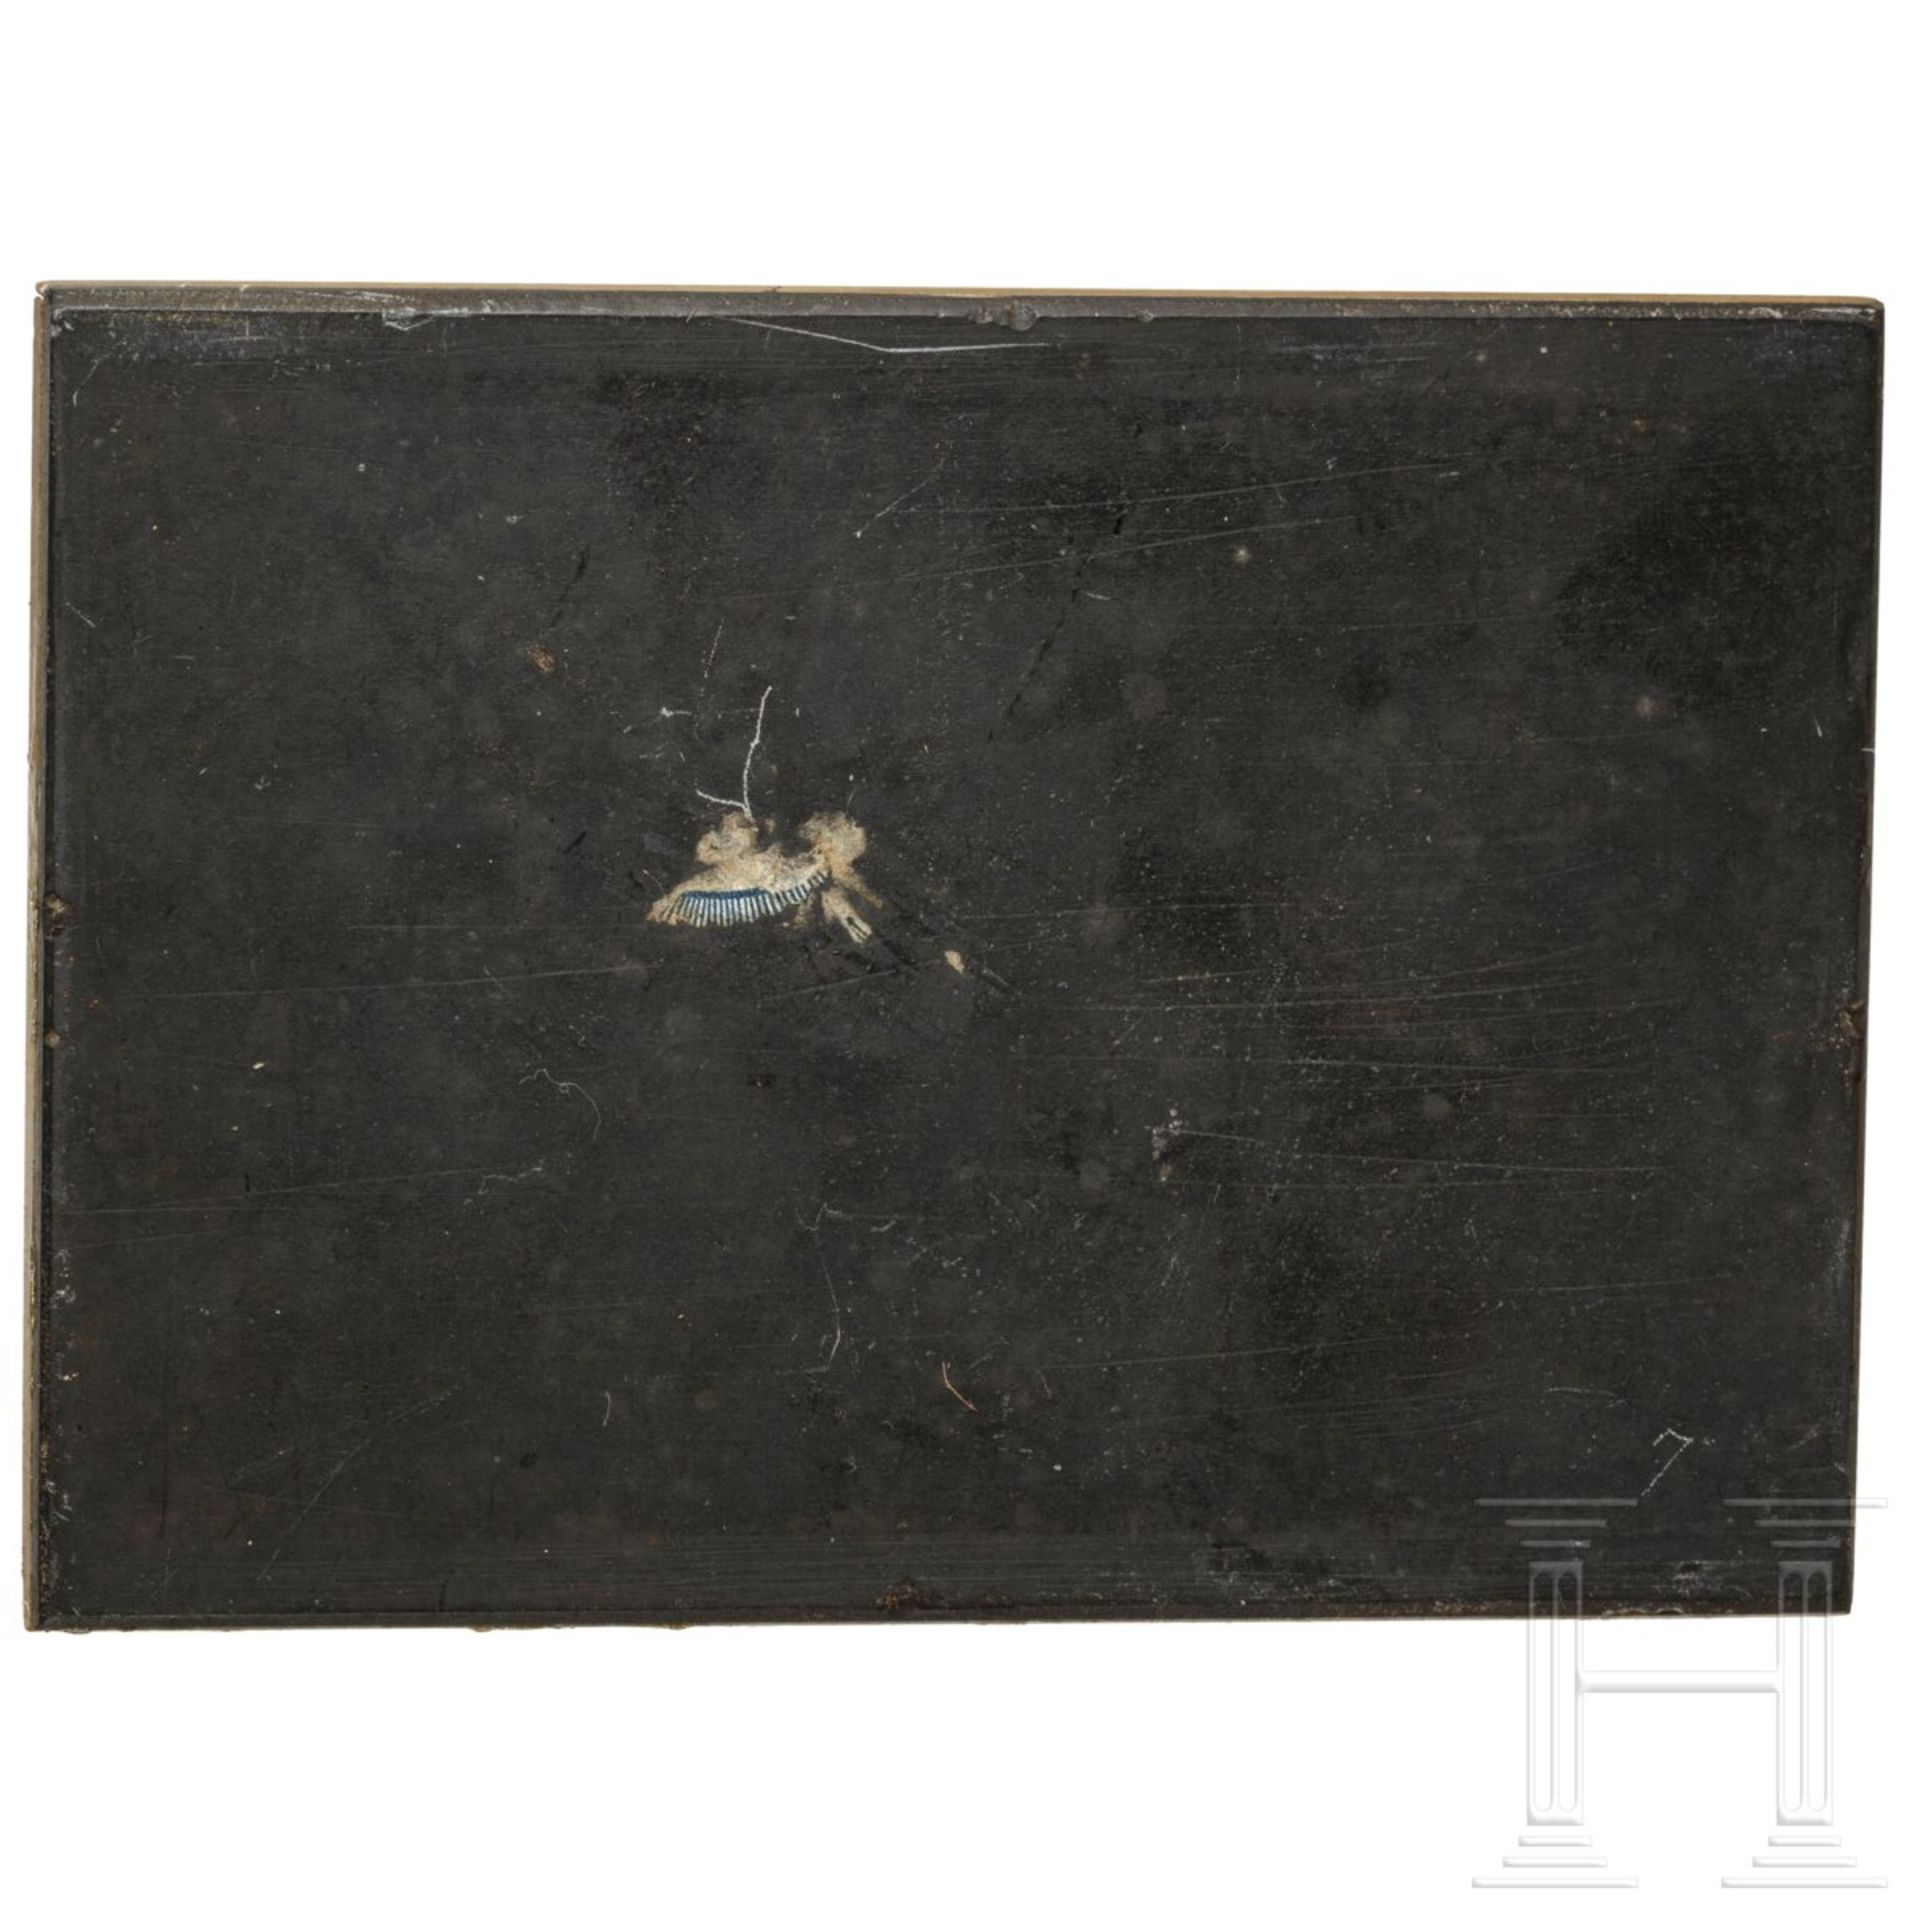 Pietra-Dura-Platte mit Vogeldarstellung, Italien, 17. Jhdt. - Bild 2 aus 3